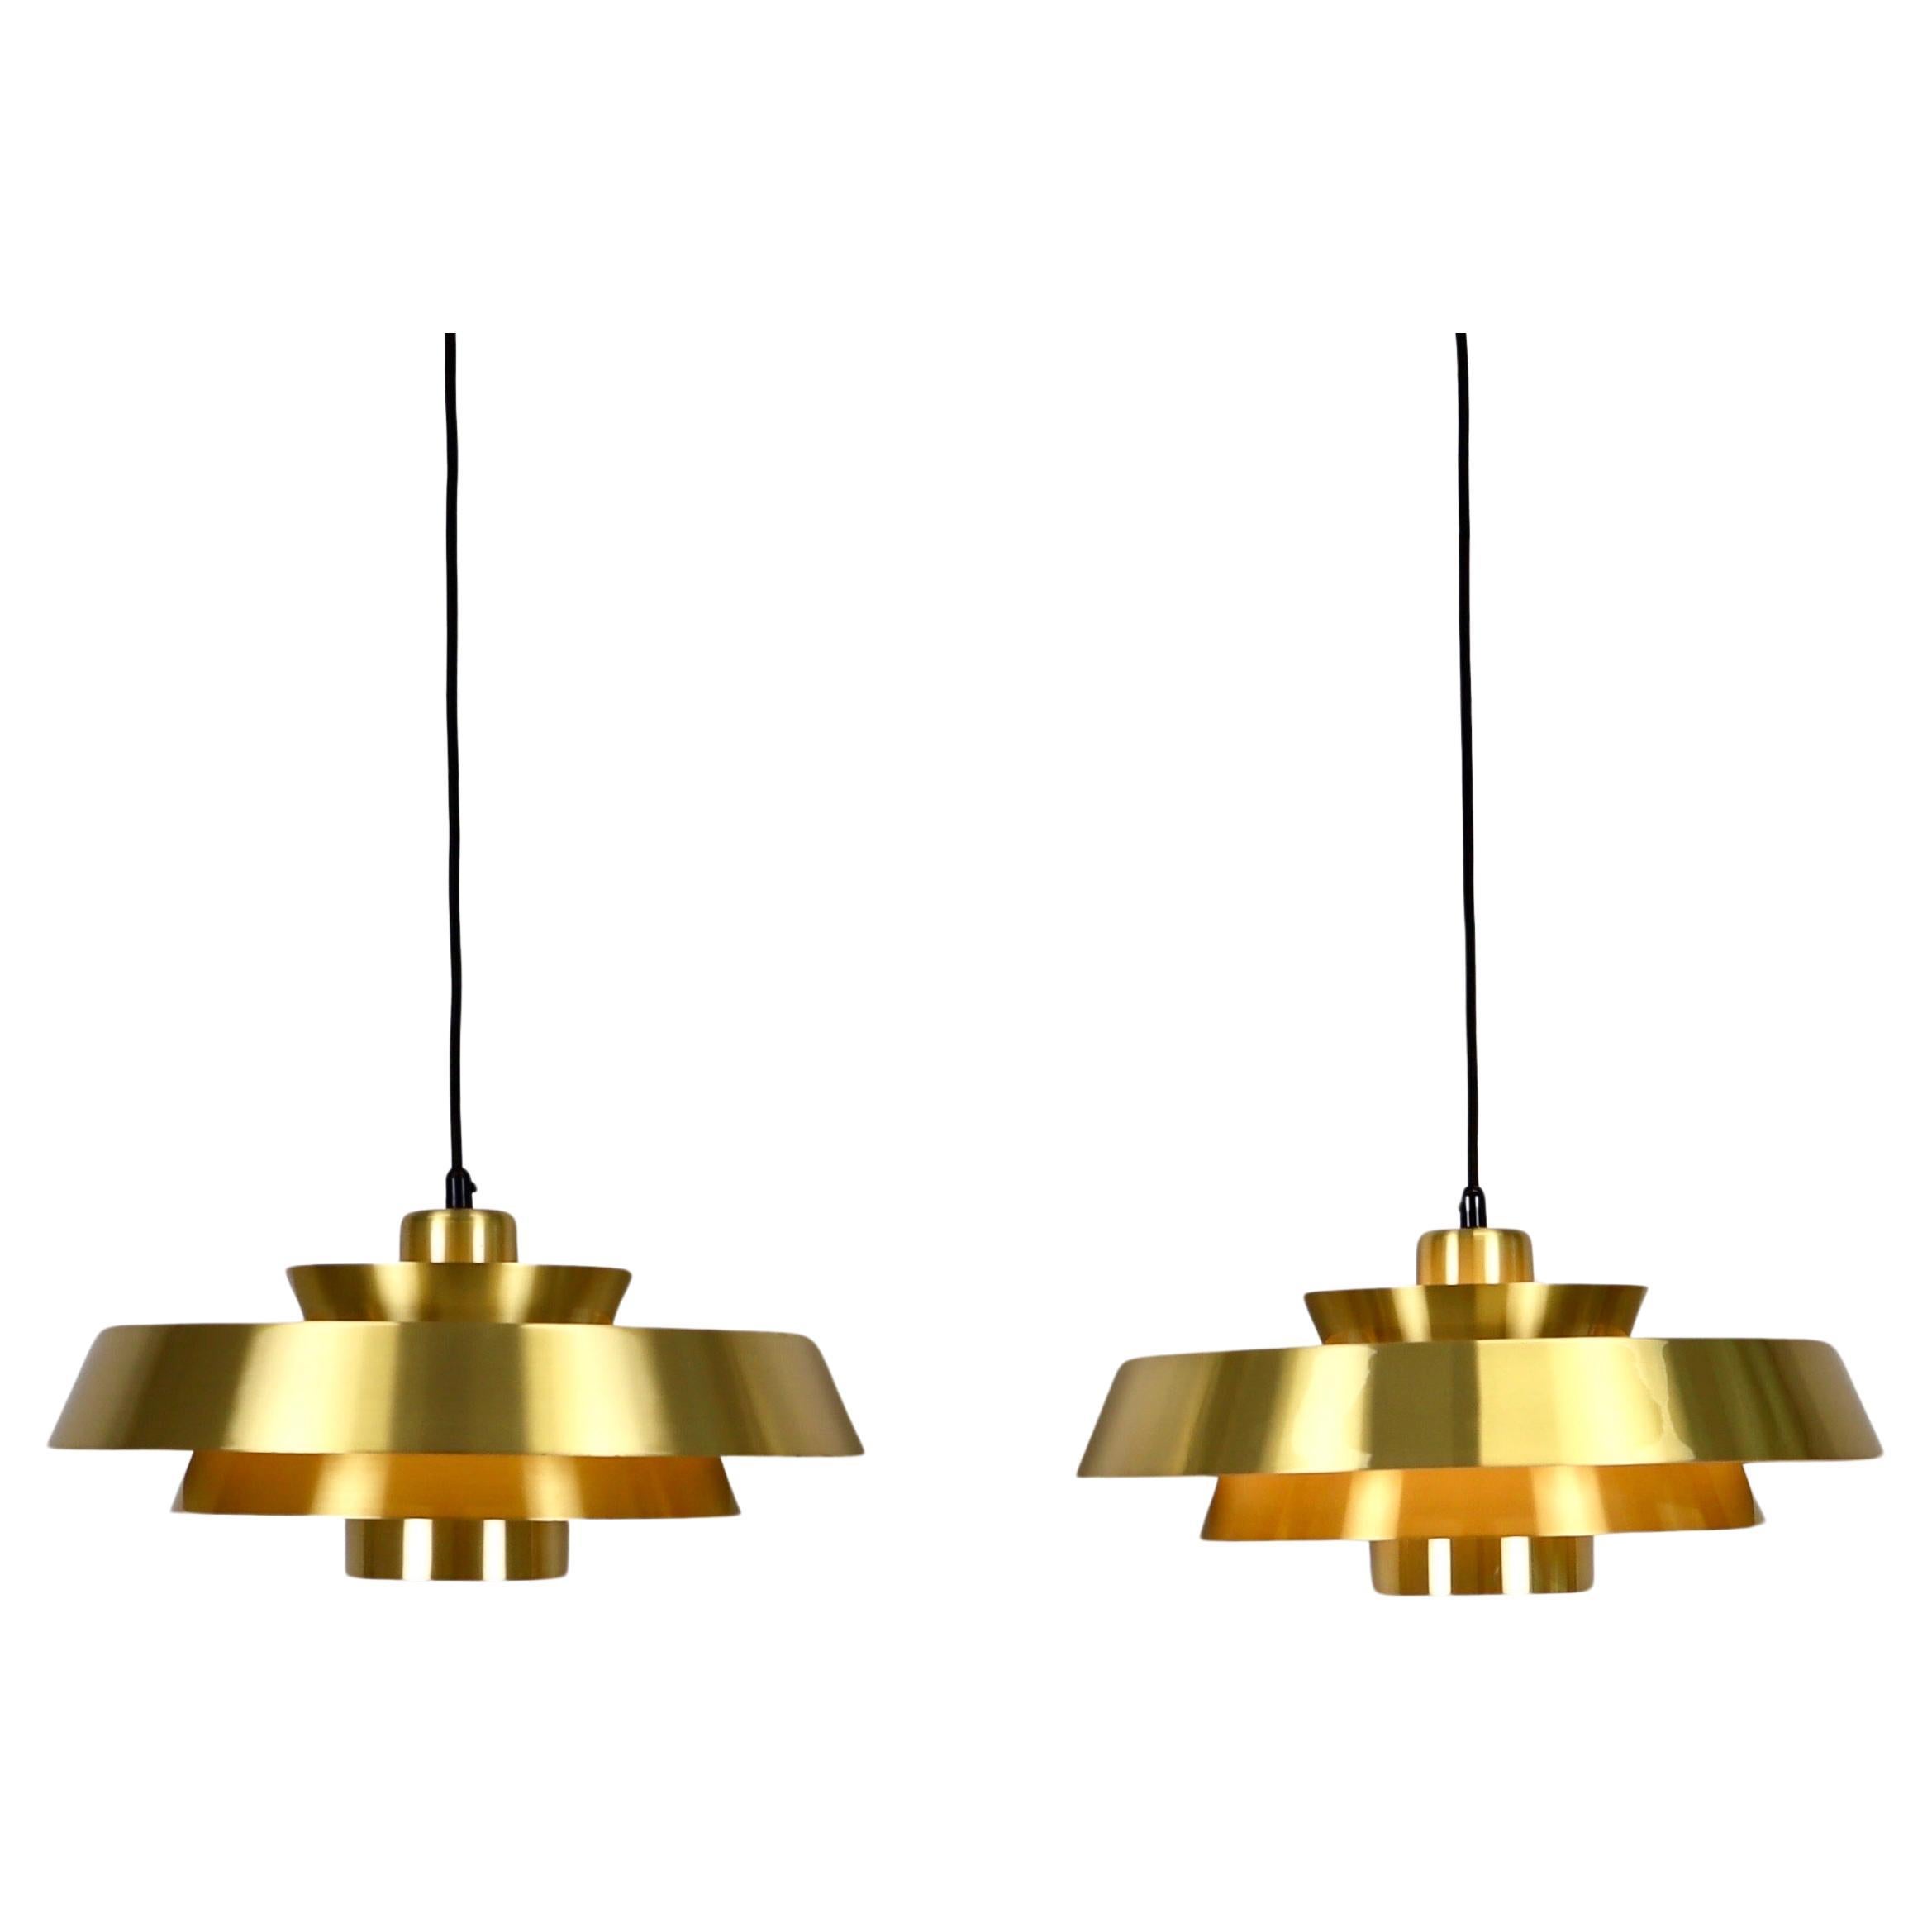 Set of Brass Pendant Lights by Jo Hammerborg for Fog & Morup, 1960s, Denmark For Sale